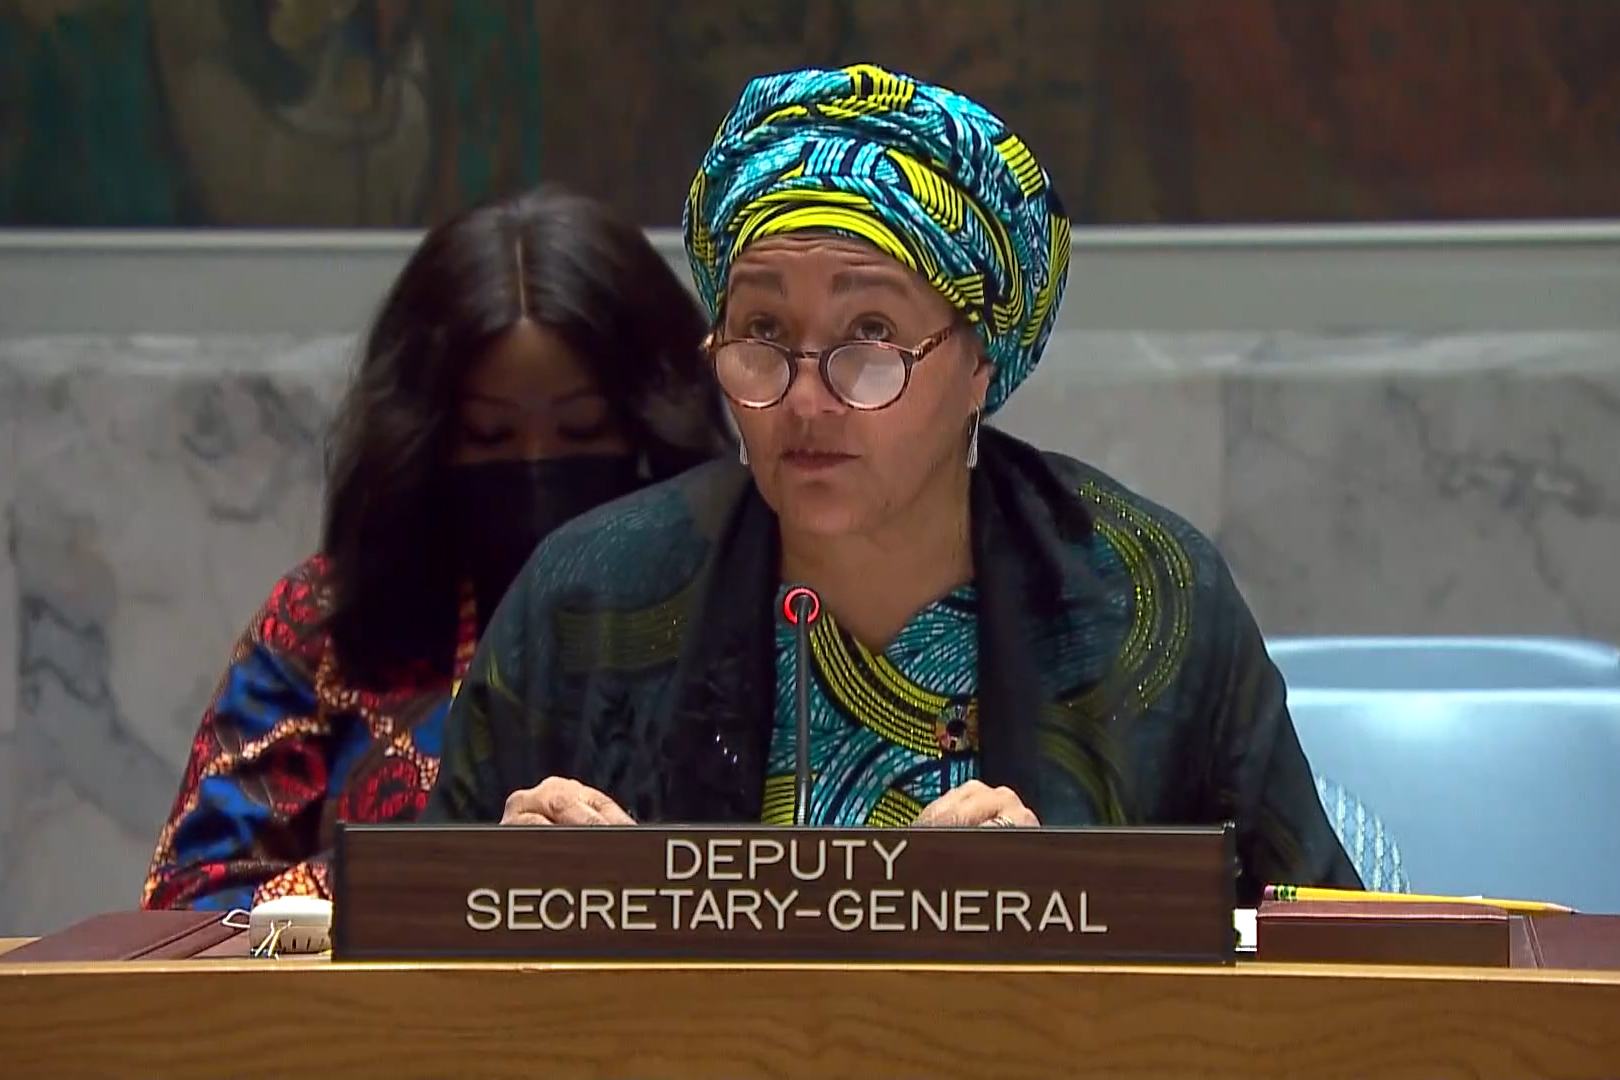 نائبة الأمين العام، أمينة محمد متحدثة في جلسة لمجلس الأمن حول "تعزيز قدرة المرأة على الصمود وقيادتها كوسيلة لتحقيق السلام في المناطق المتضررة من الجماعات المسلحة".